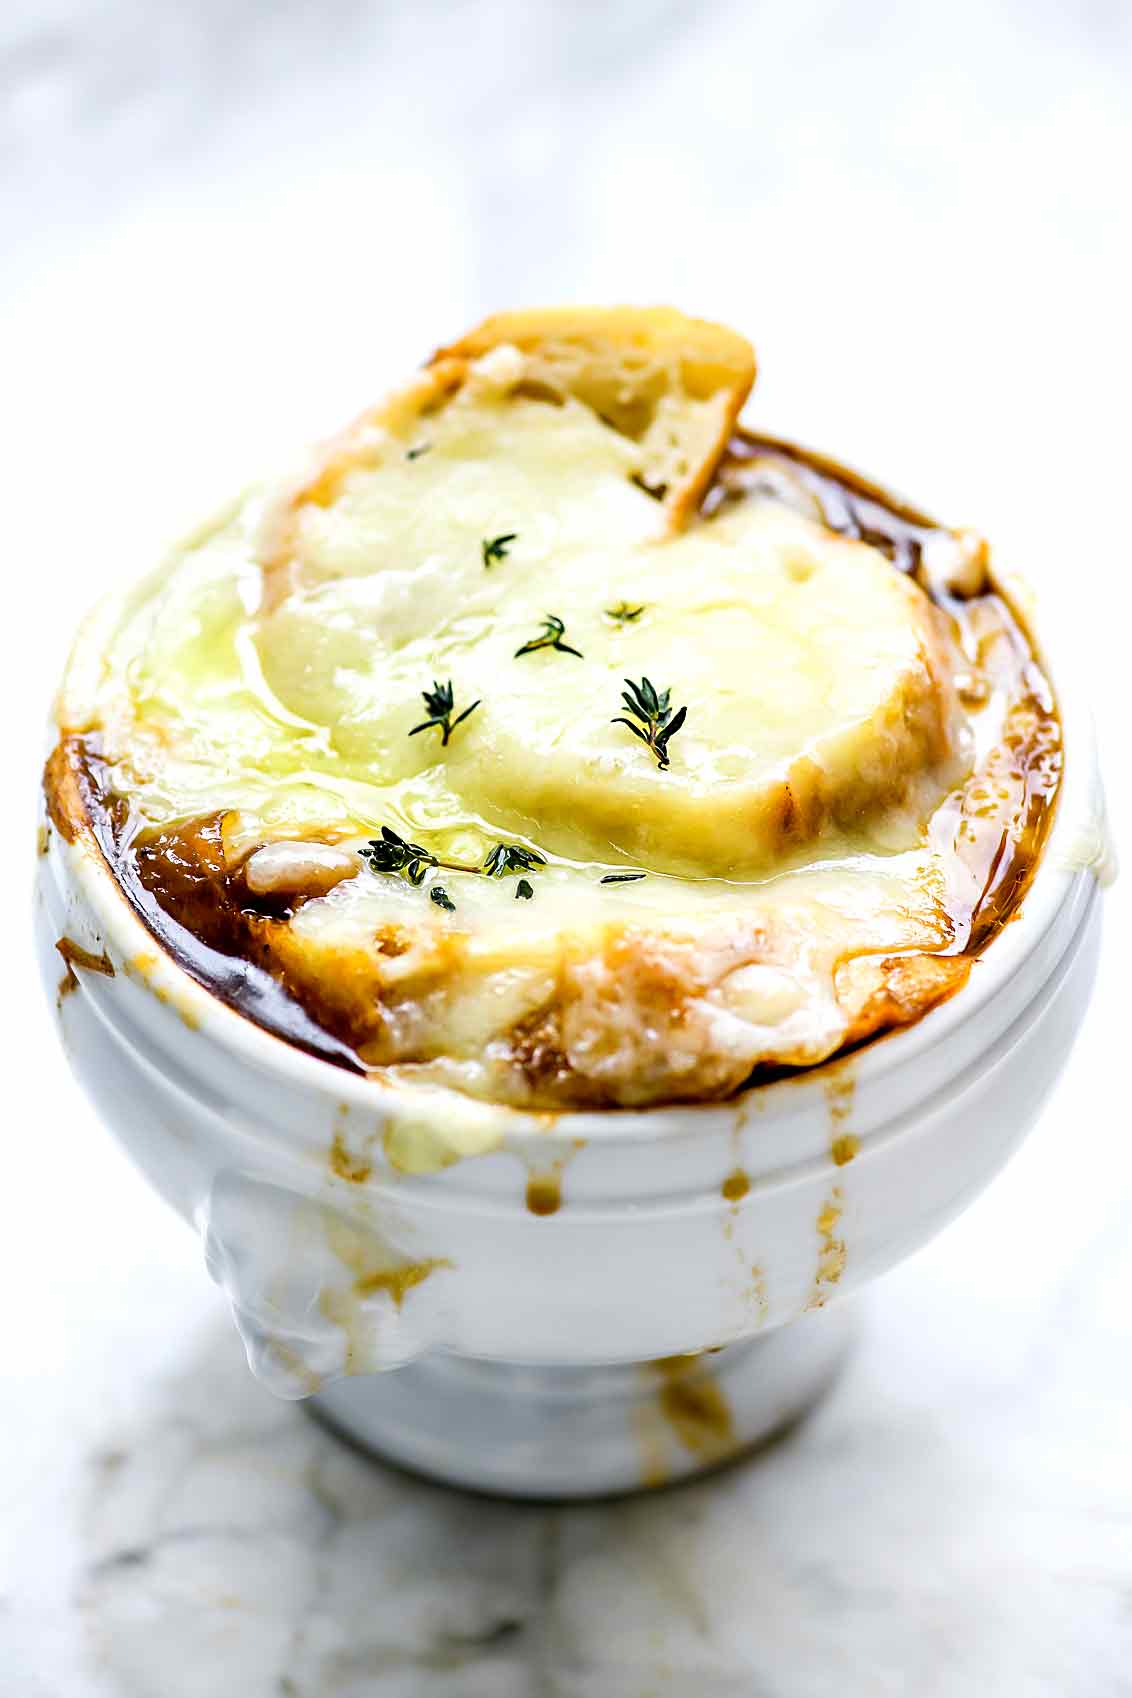 La meilleure soupe à l'oignon française | foodiecrush.com #facile #rcipe #meilleure #soupe #oignon #frenchonion